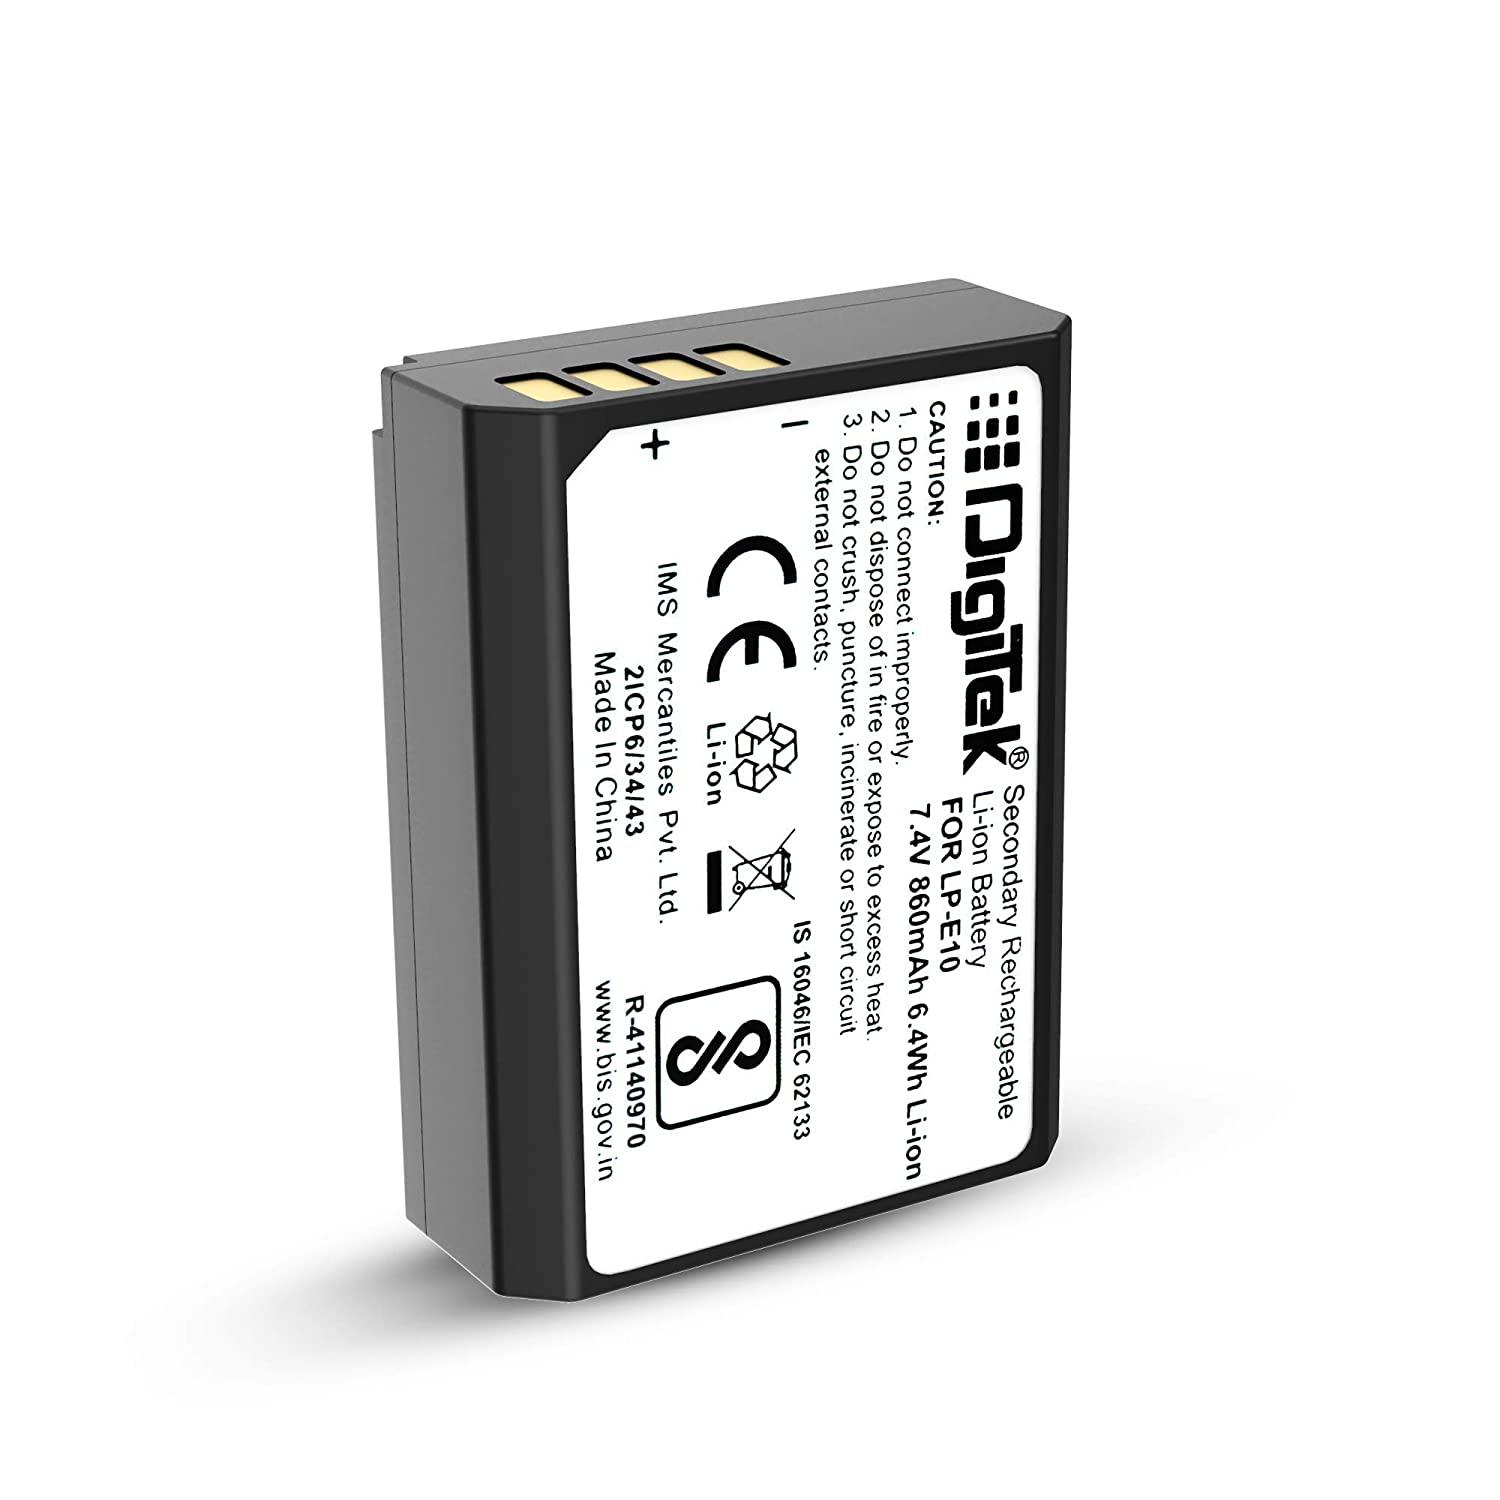 Digitek (LP E10) Lithium-ion Rechargeable Battery for DSLR Camera, Compatibility - EOS 1100D, EOS 1200D, EOS Rebel T3, EOS Rebel T5, X50 & EOS Kiss - Digitek